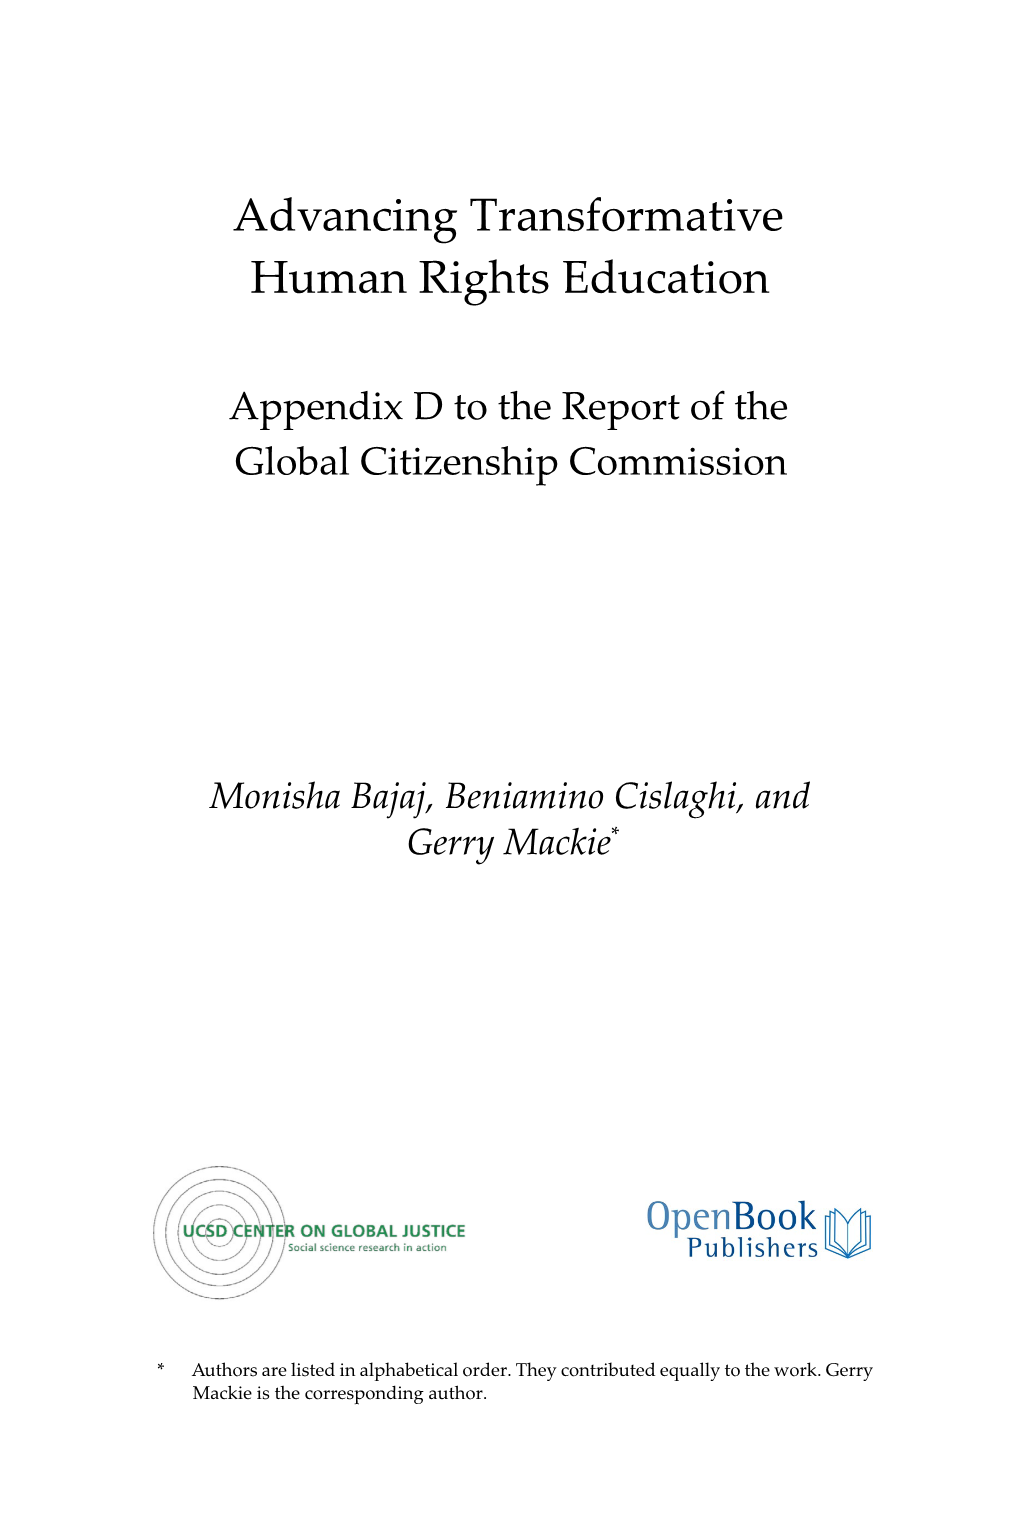 Advancing Transformative Human Rights Education